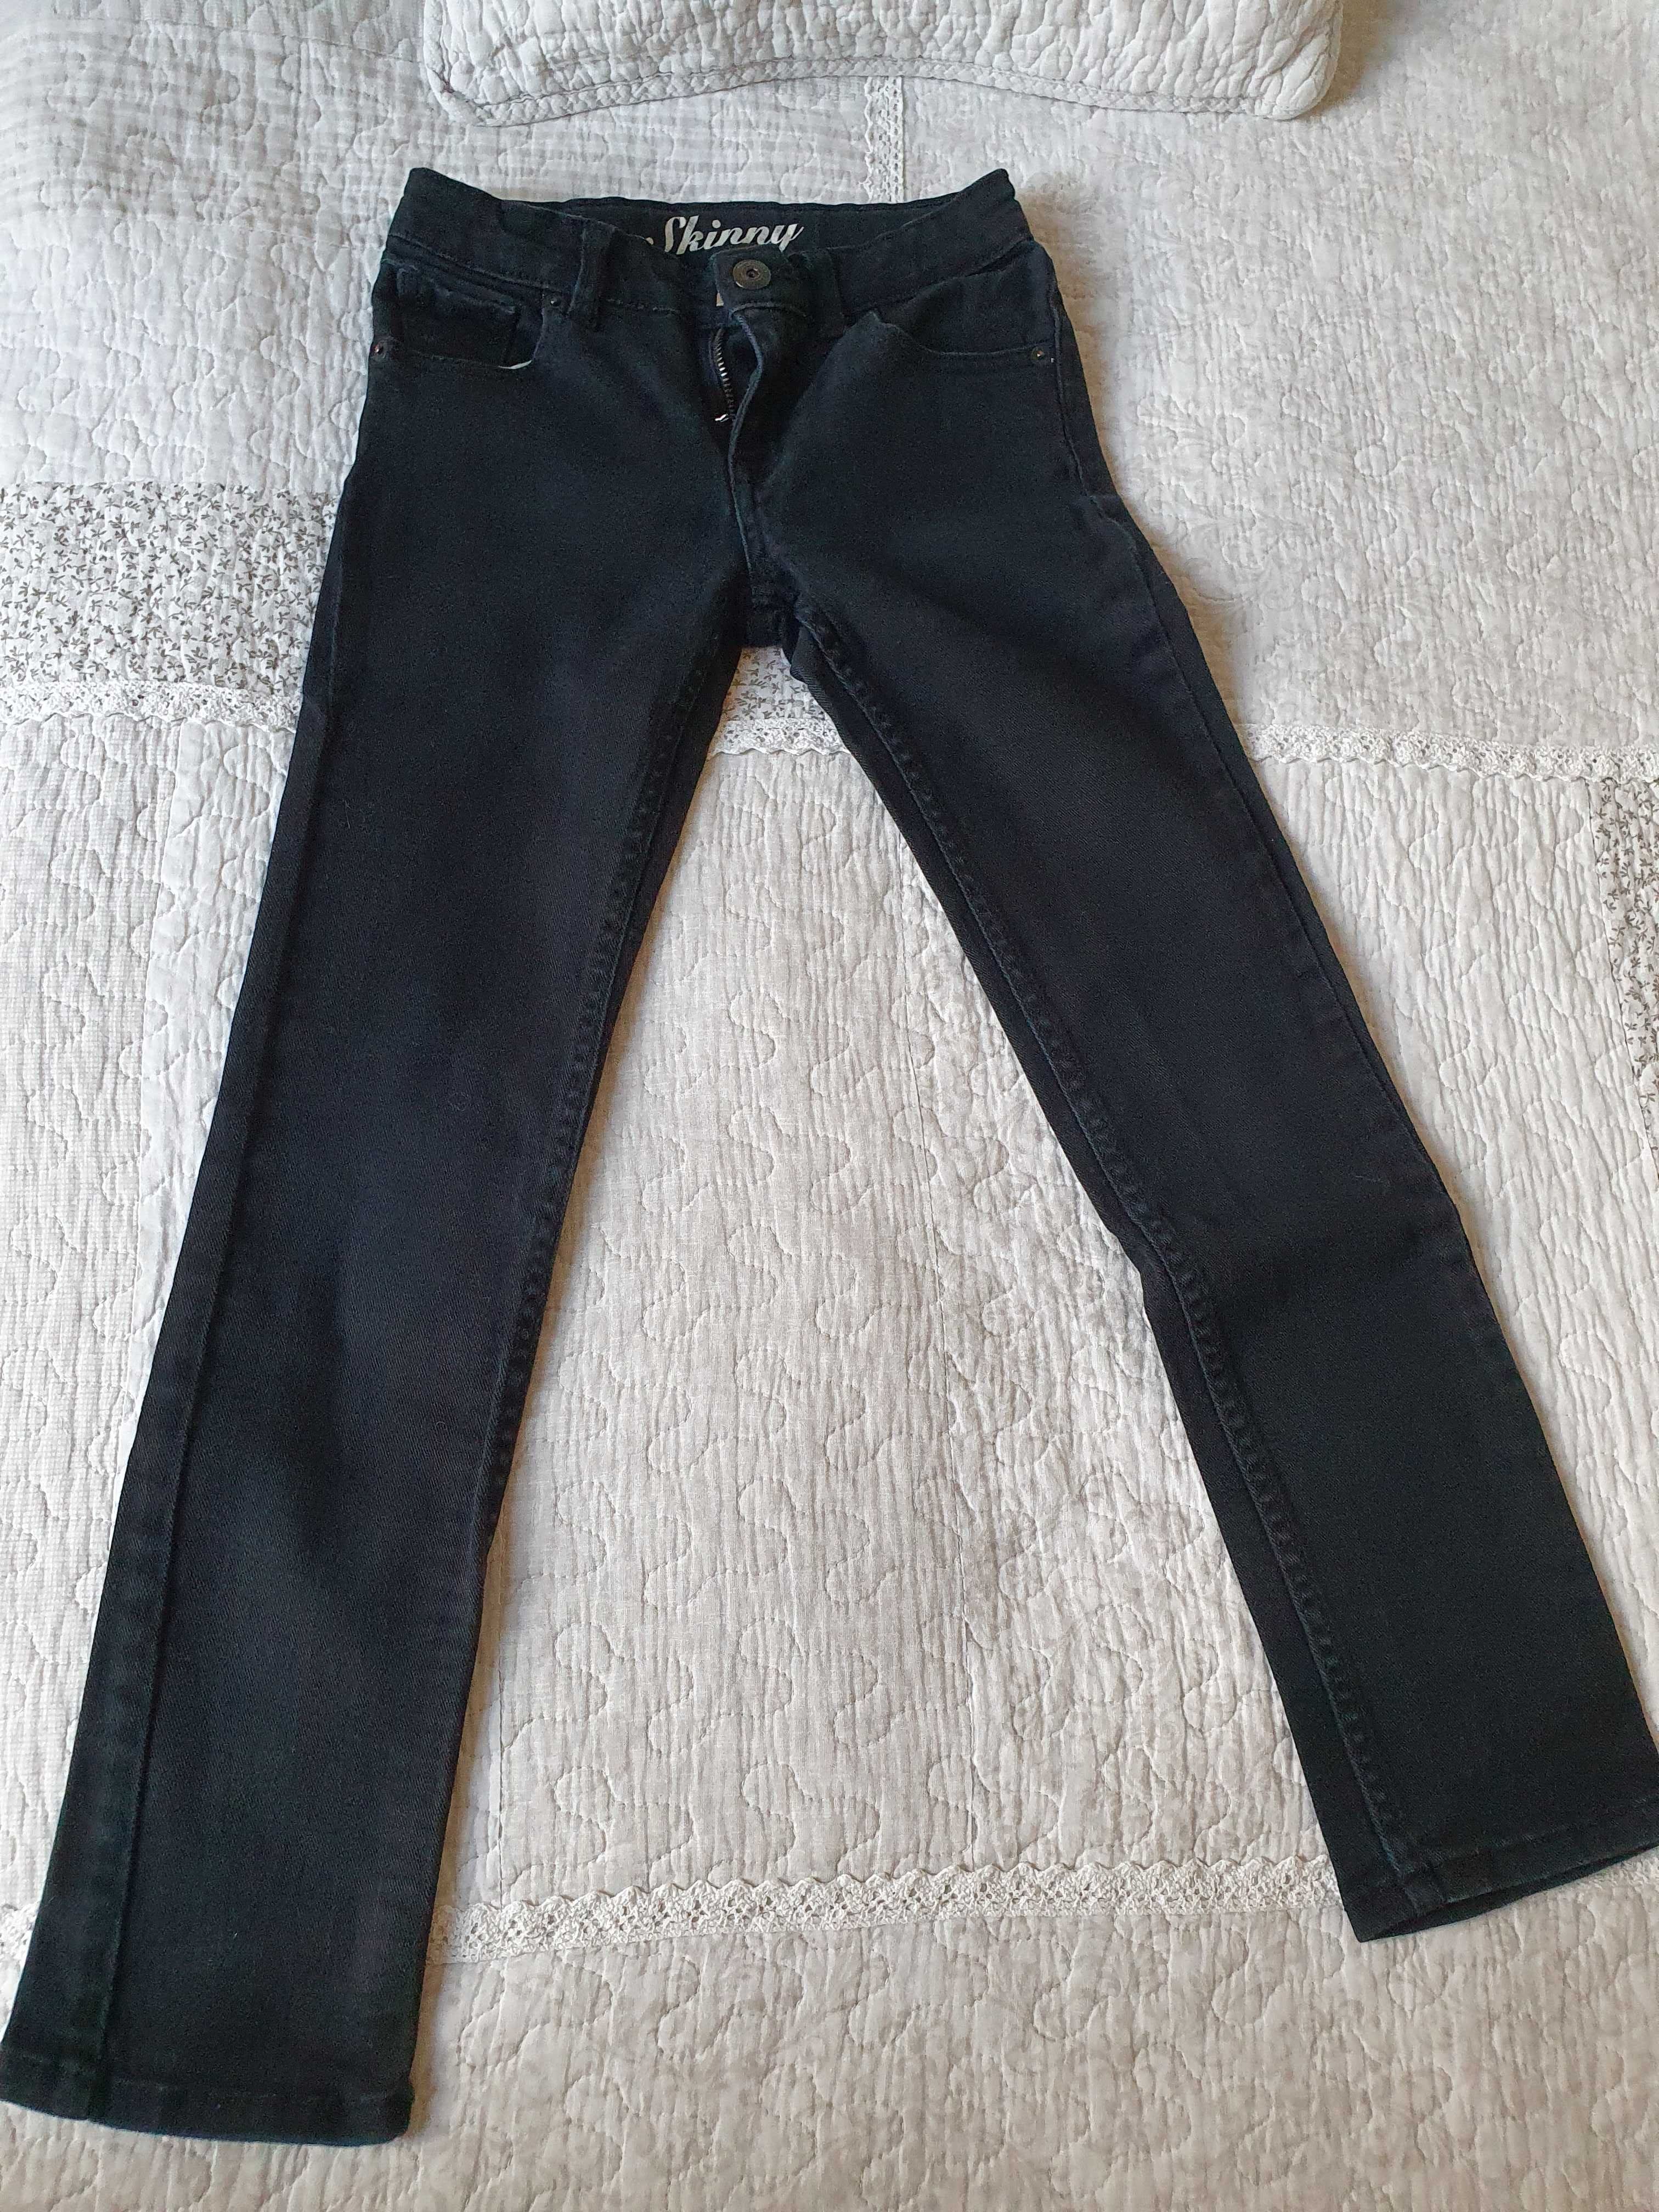 Granatowe spodnie jeansowe dla dziewczynki Crazy 8 rozm 128/135